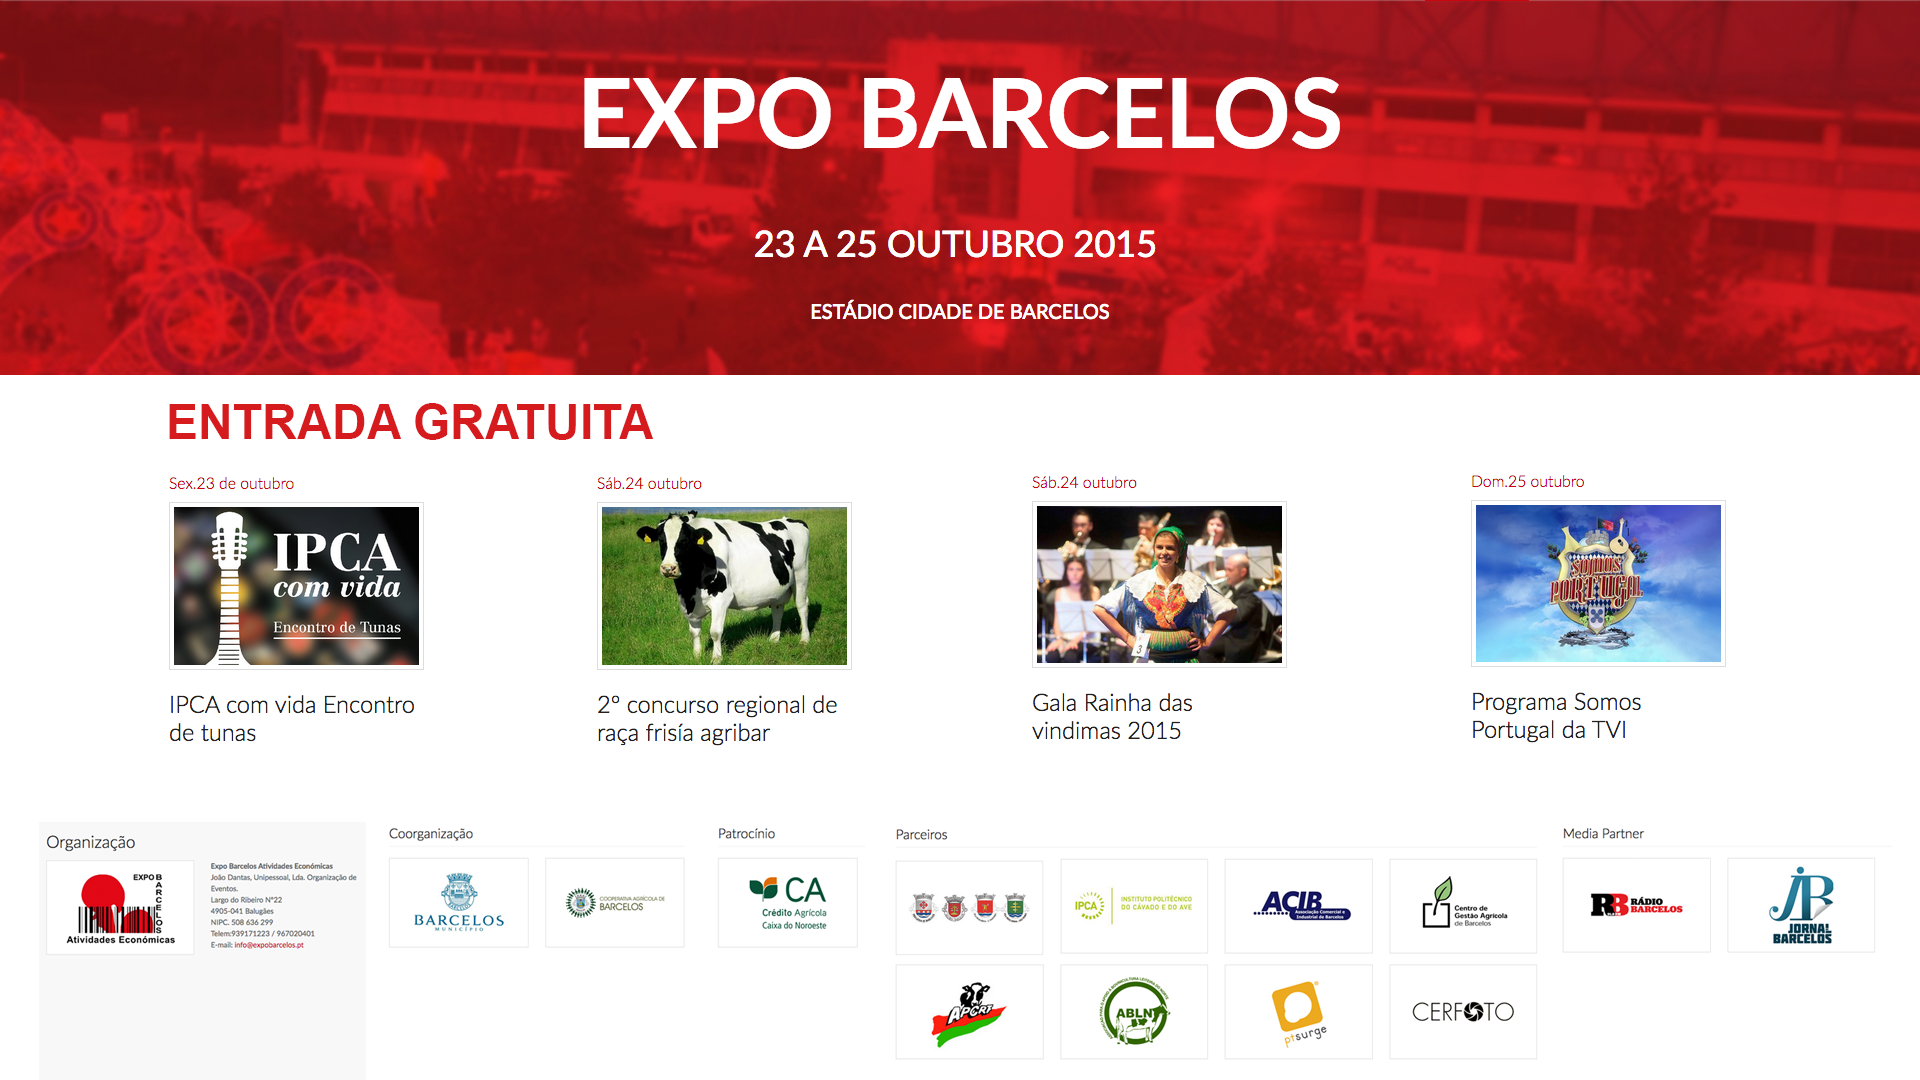 EXPO BARCELOS 2015